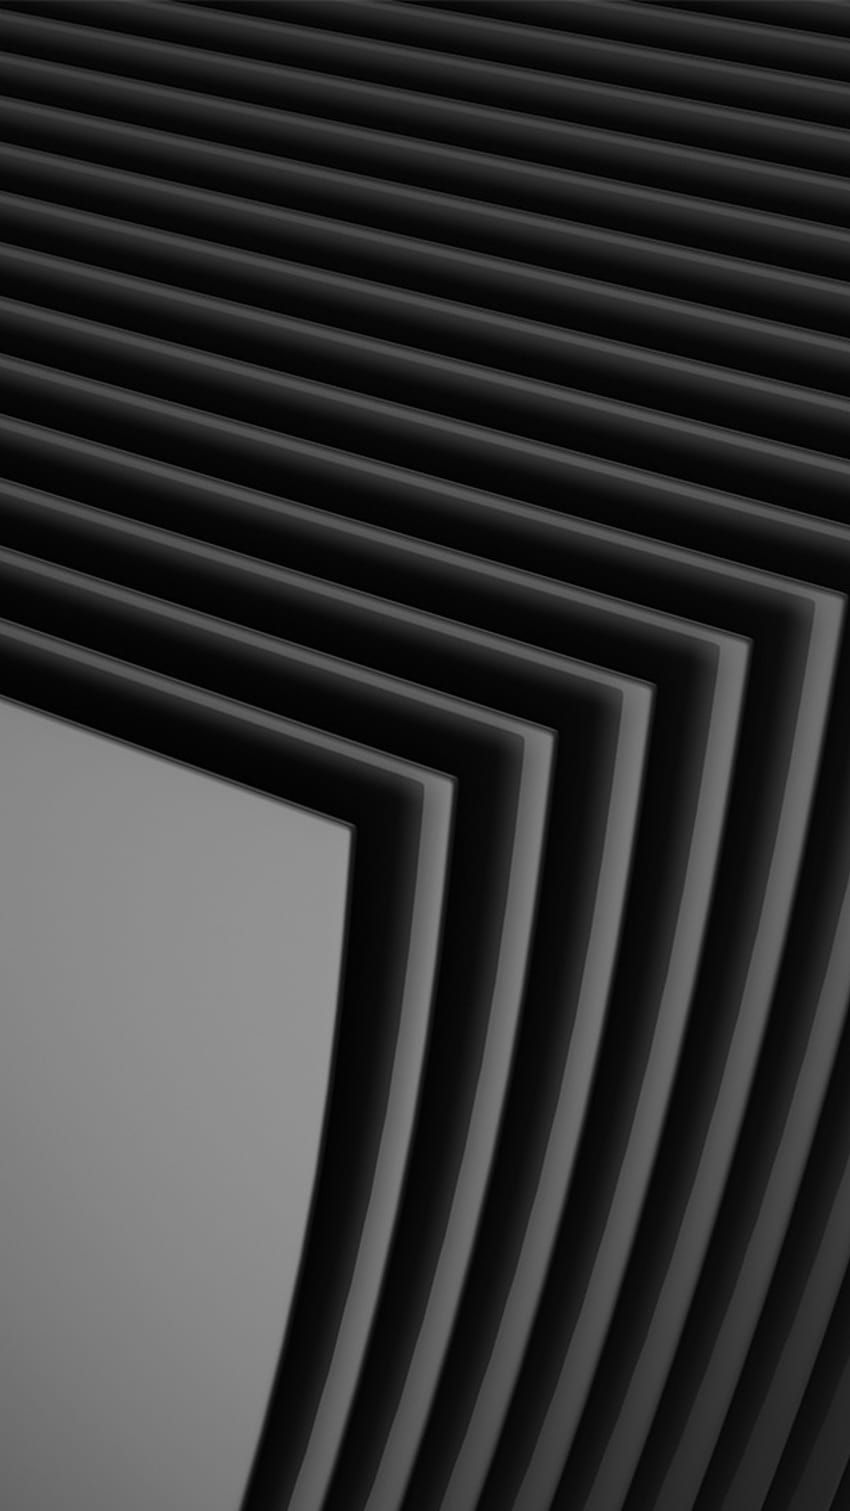 Những hình nền abtract đen là sự kết hợp độc đáo giữa sự tối giản và phong cách. Nếu bạn muốn tìm những hình nền đơn giản nhưng thu hút sự chú ý, hãy xem ngay hình ảnh liên quan đến từ khóa này để tìm kiếm những bức ảnh abtract đen đẹp mắt.